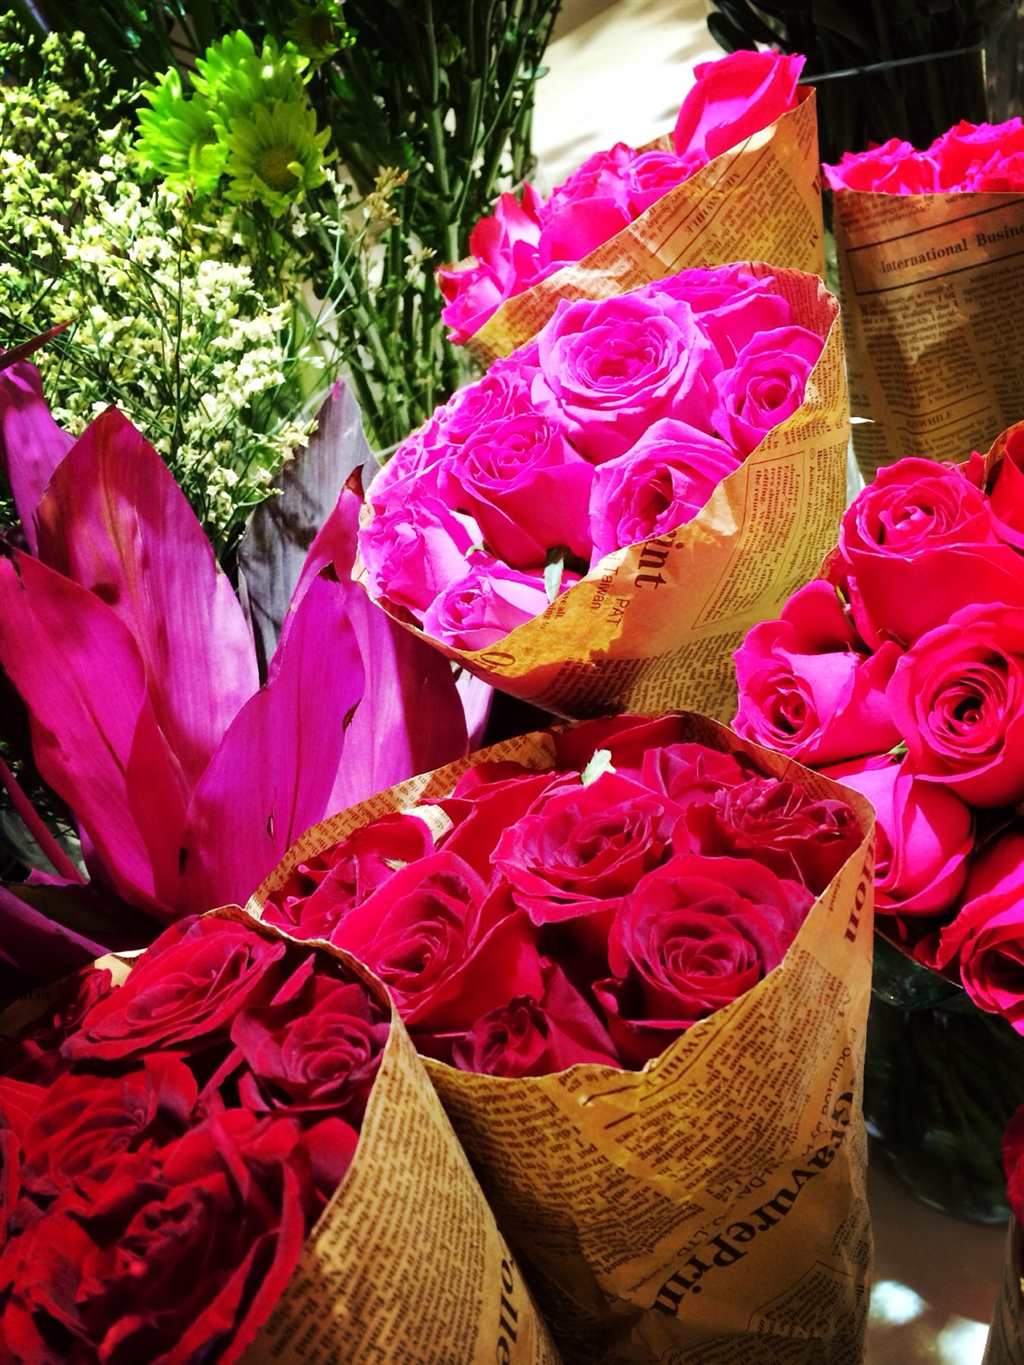 红玫瑰象征着热烈的爱,希望大家都爱情美满,幸福甜蜜